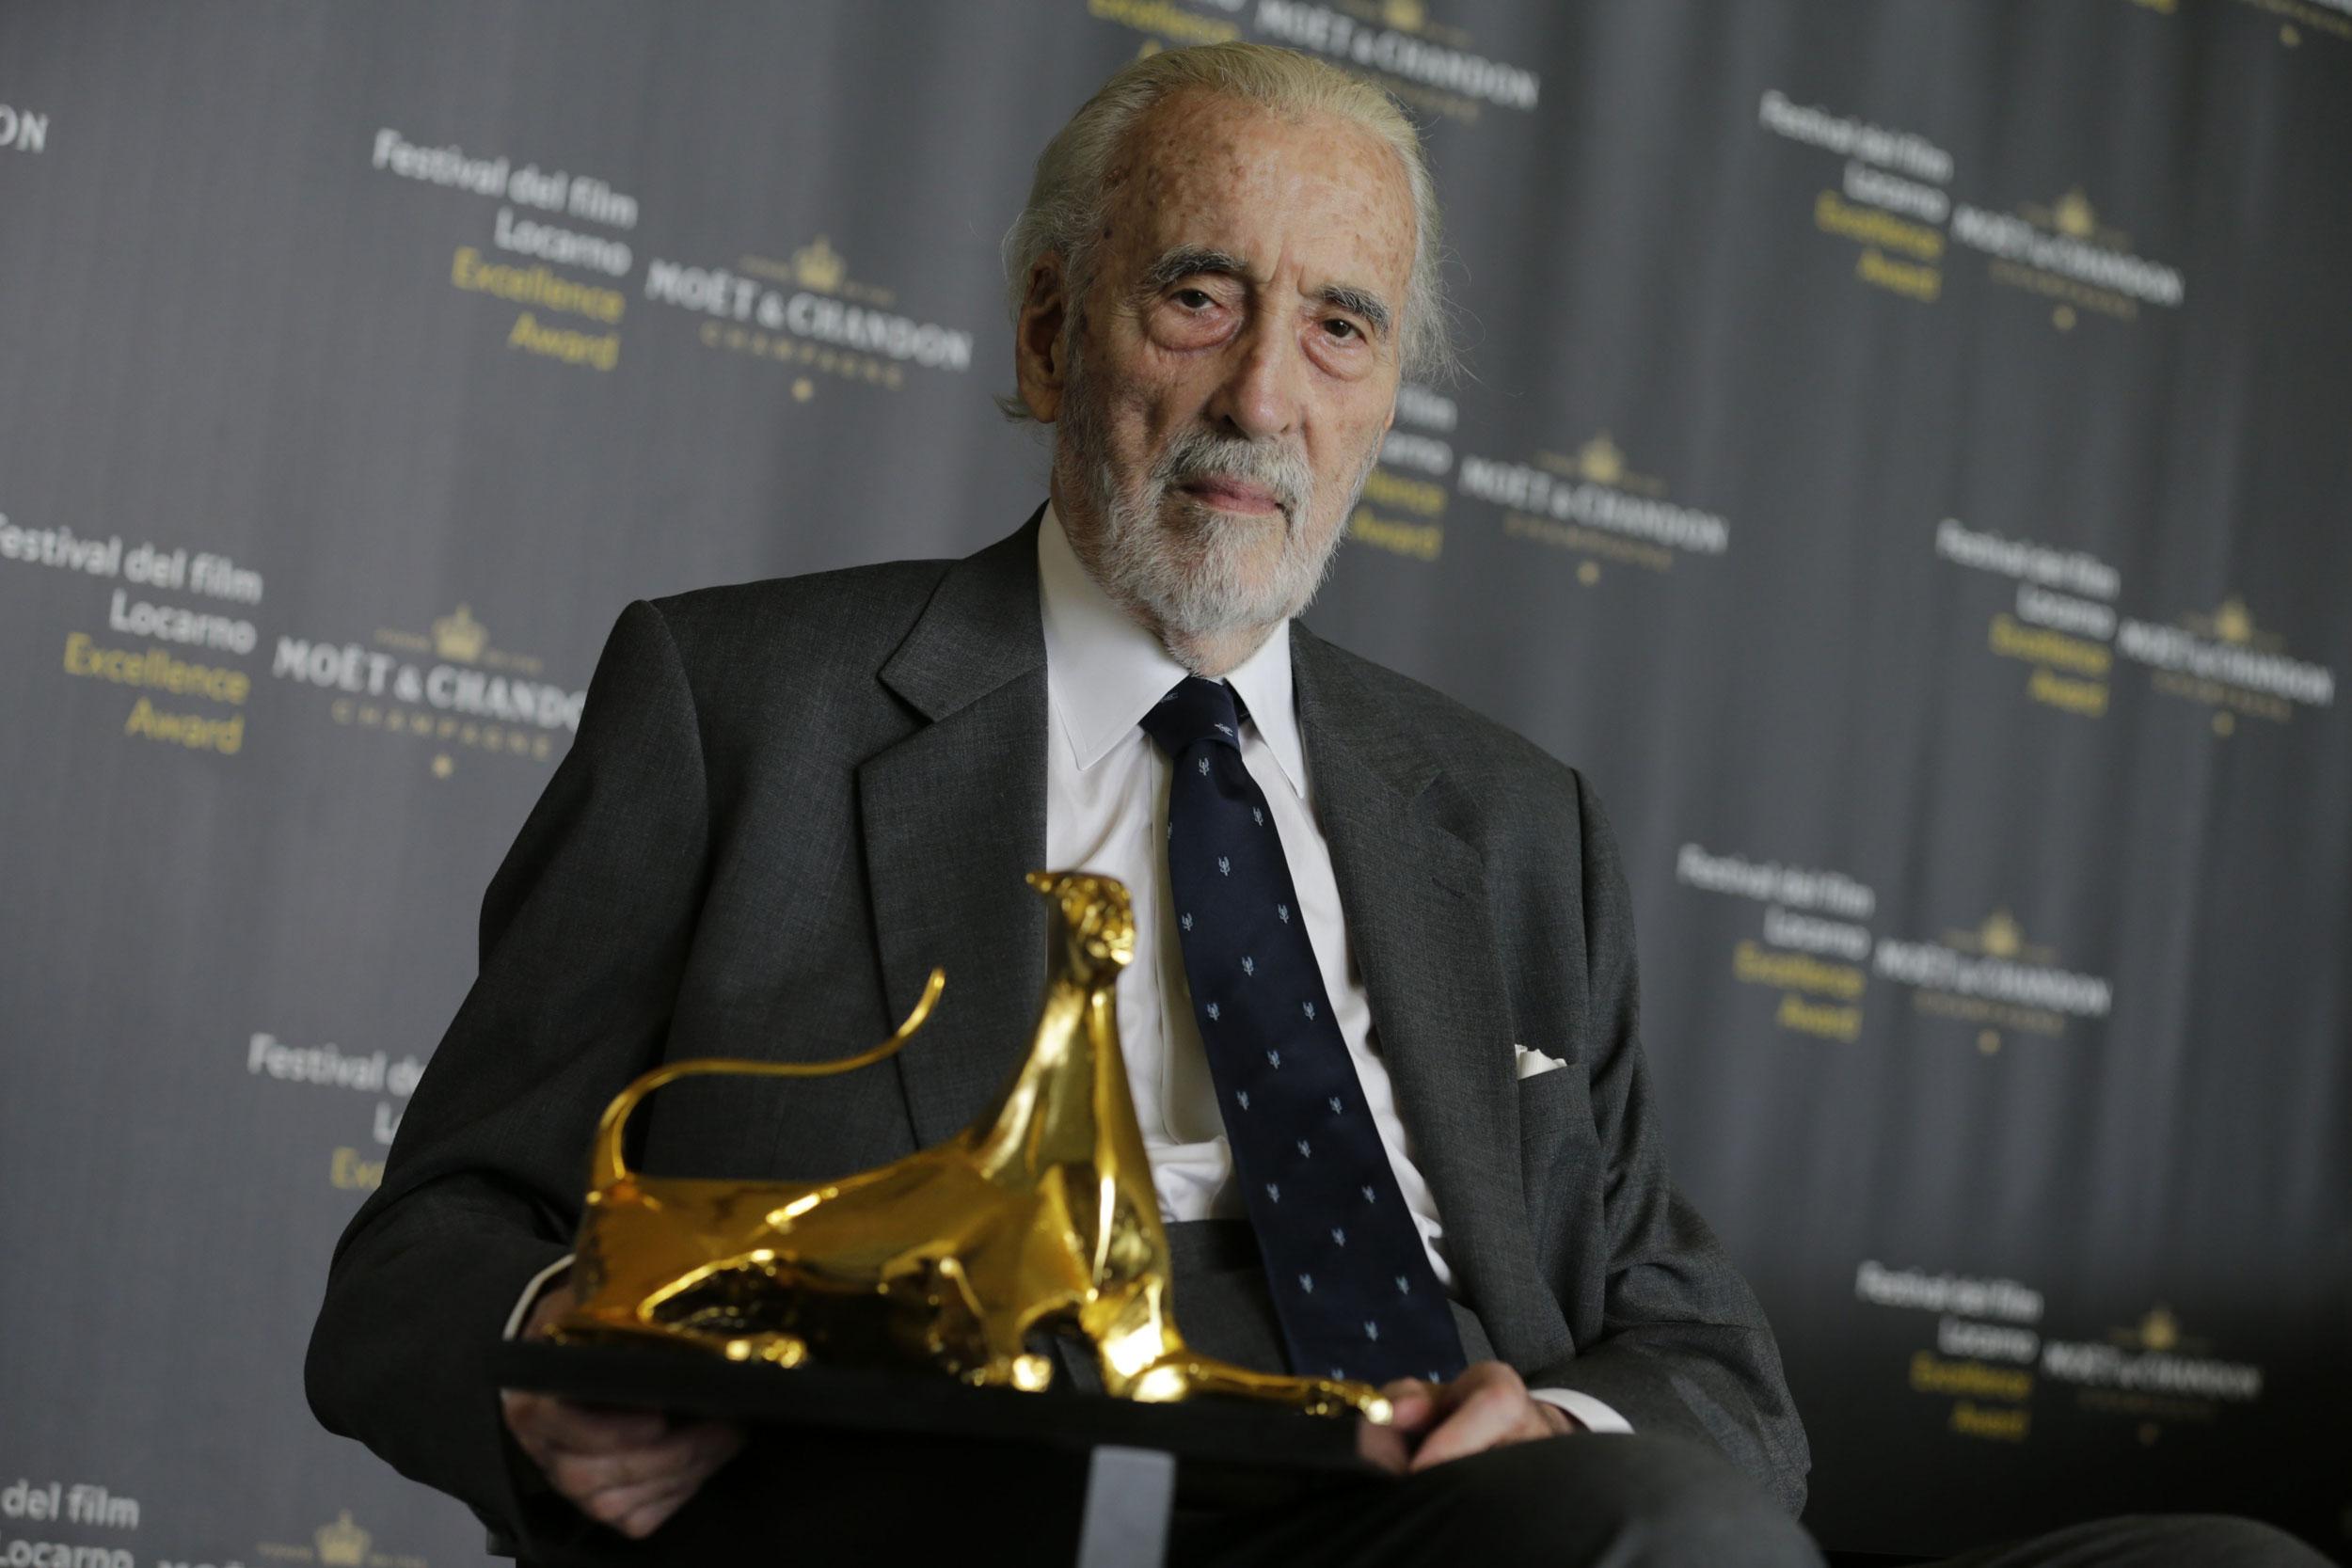 Le Festival du film de Locarno a décerné à Sir Christopher Lee le prix de "L’Excellence Award Moët & Chandon". [pardolive.ch - Massimo Pedrazzini]